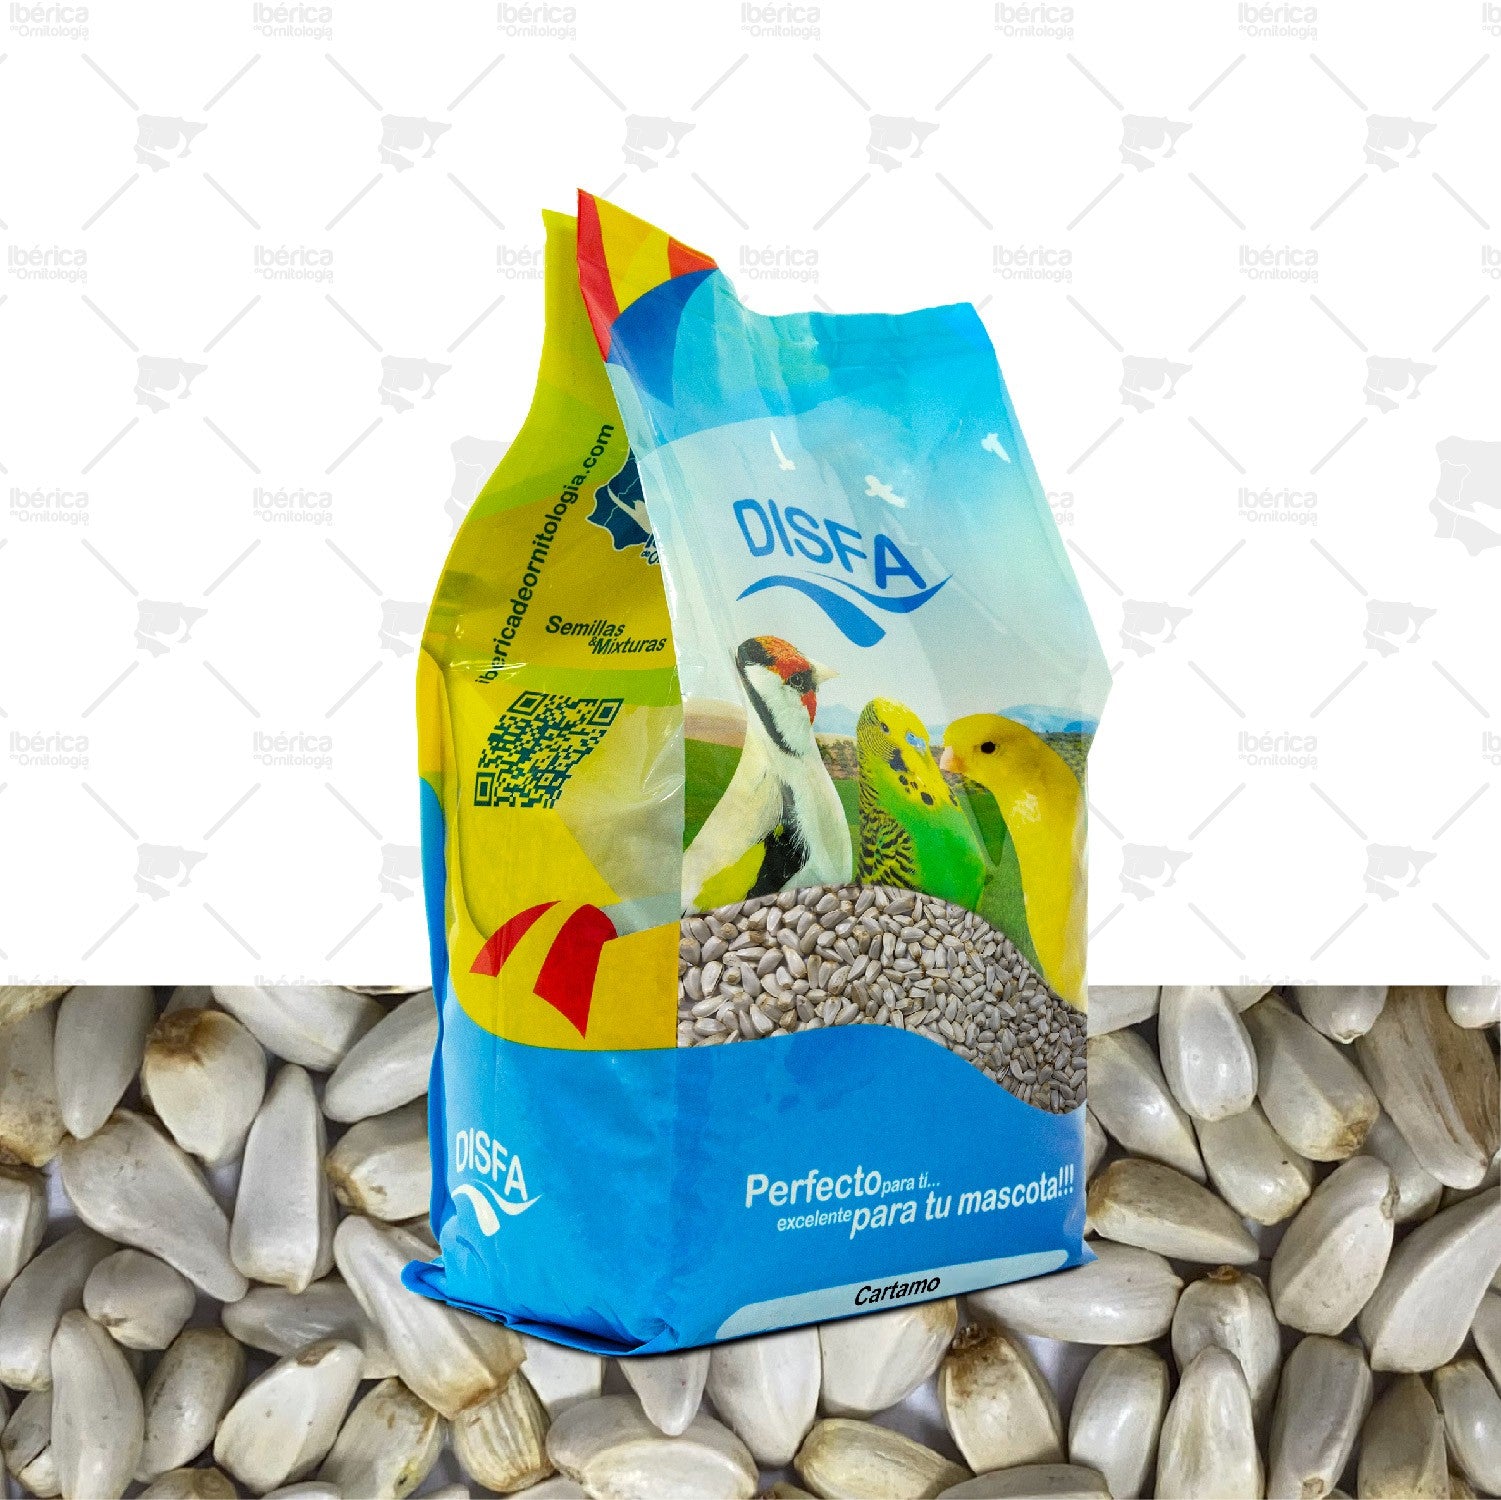 Cártamo (Disfa), semilla con numerosas propiedades tanto alimenticias como para el organismo de pájaros ibericadeornitologia